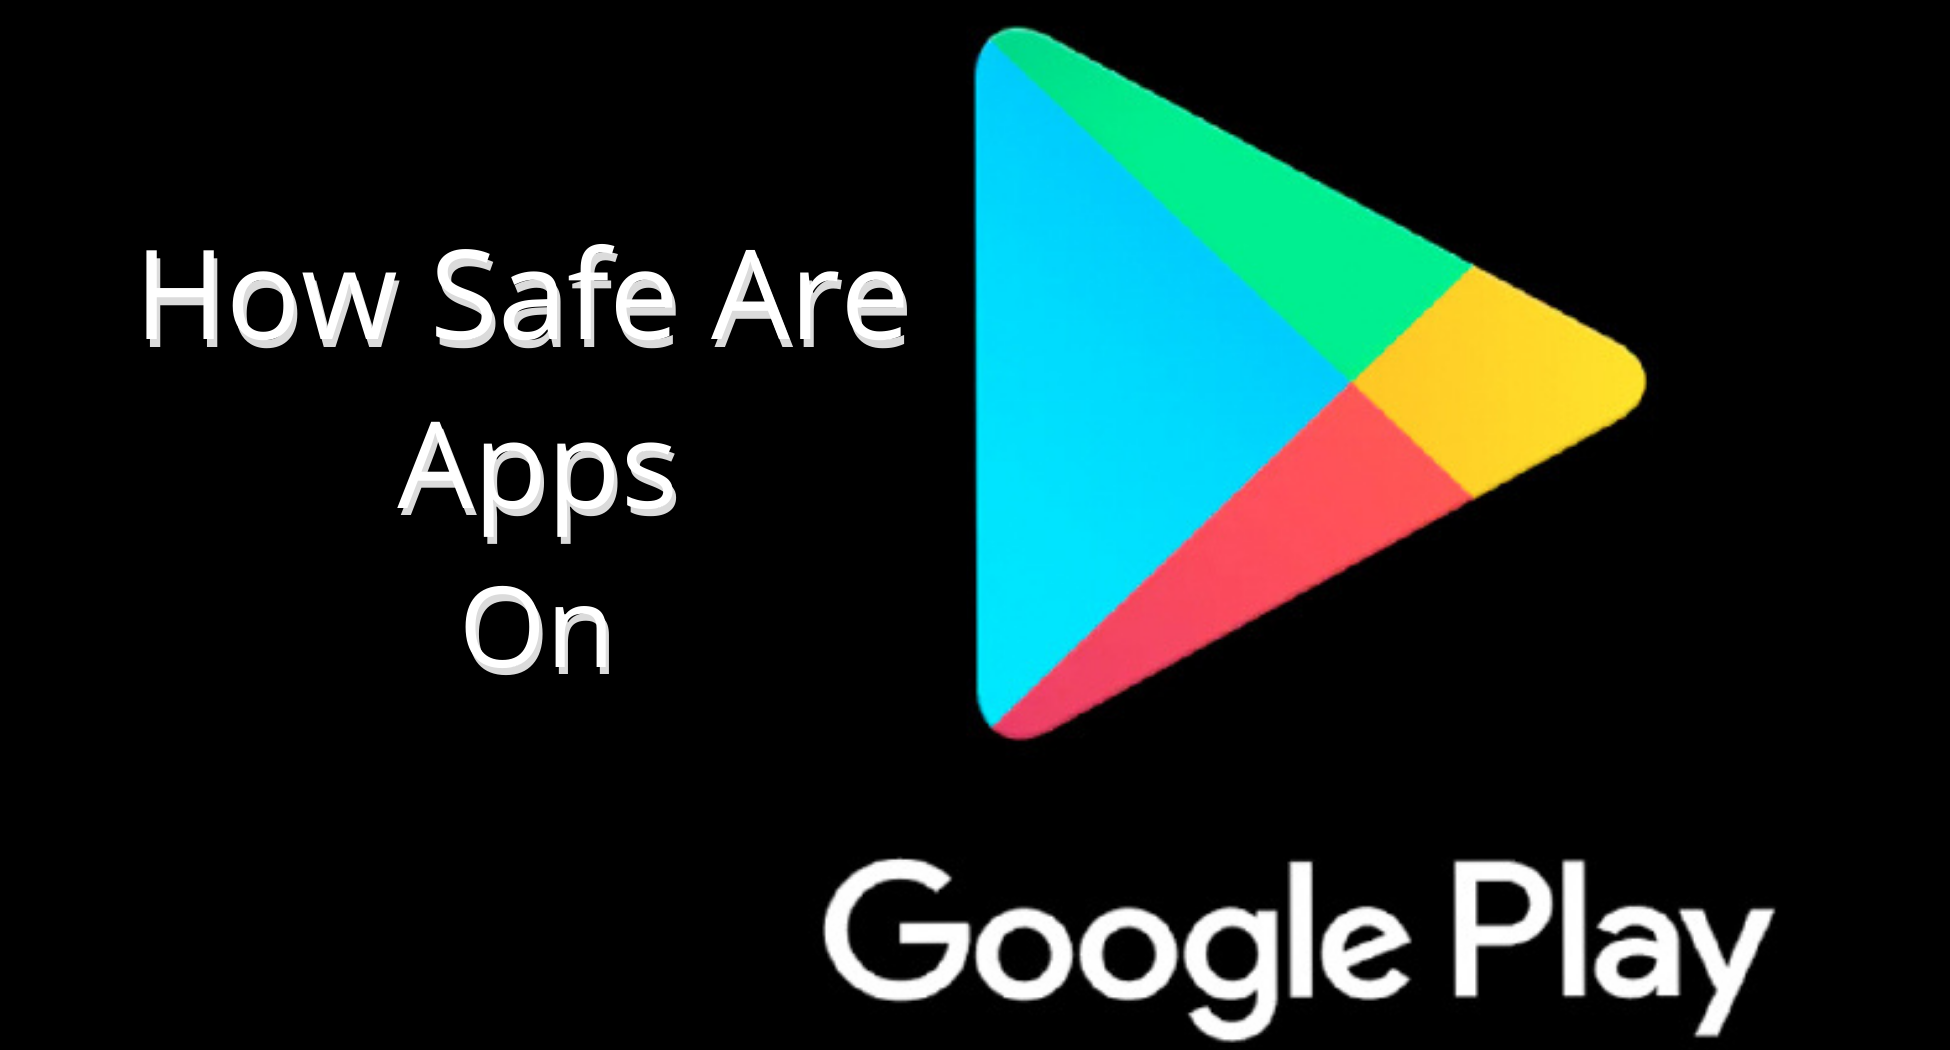 Jsou aplikace Store Google Play bezpečné?